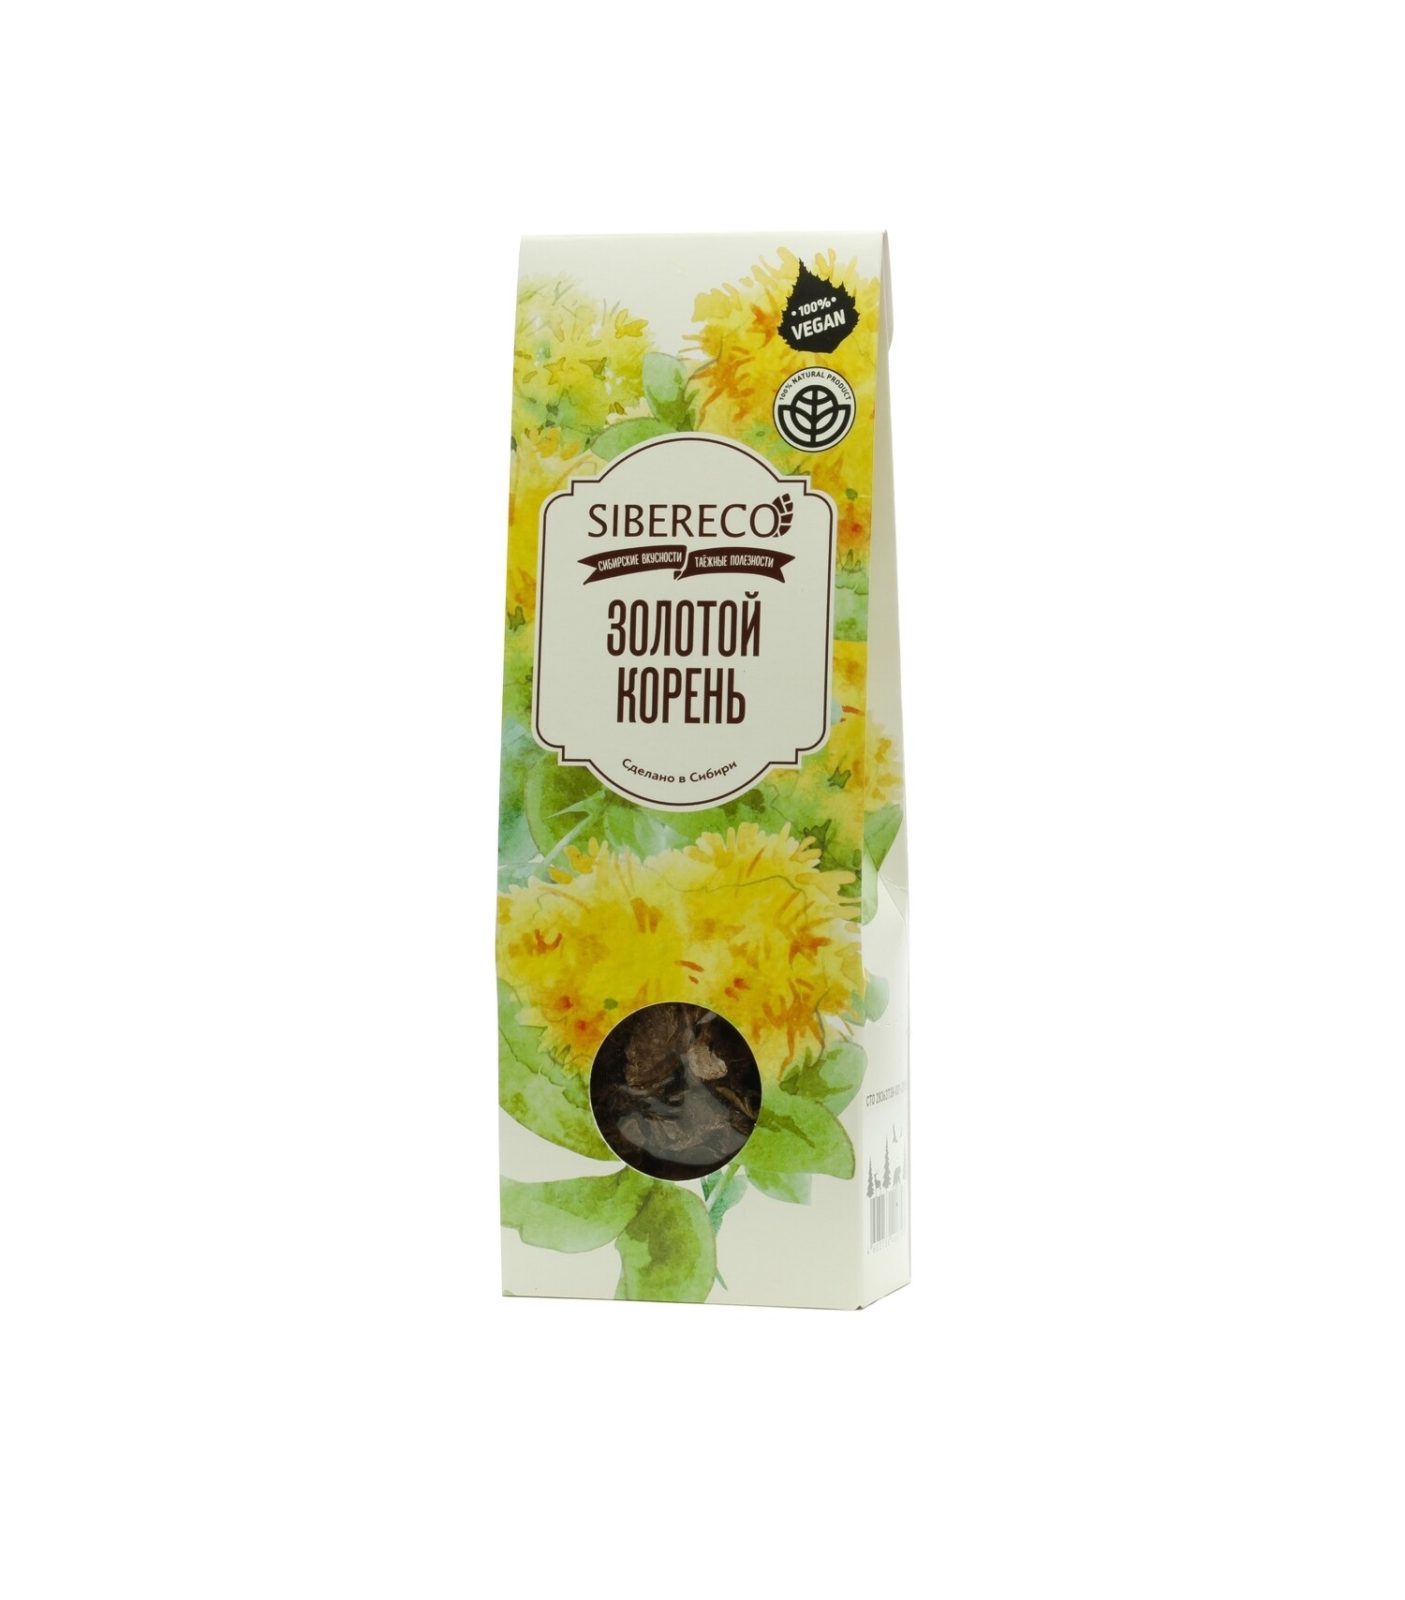 Напиток чайный из растительного сырья "Золотой корень" 30 гр коробка Sibereco